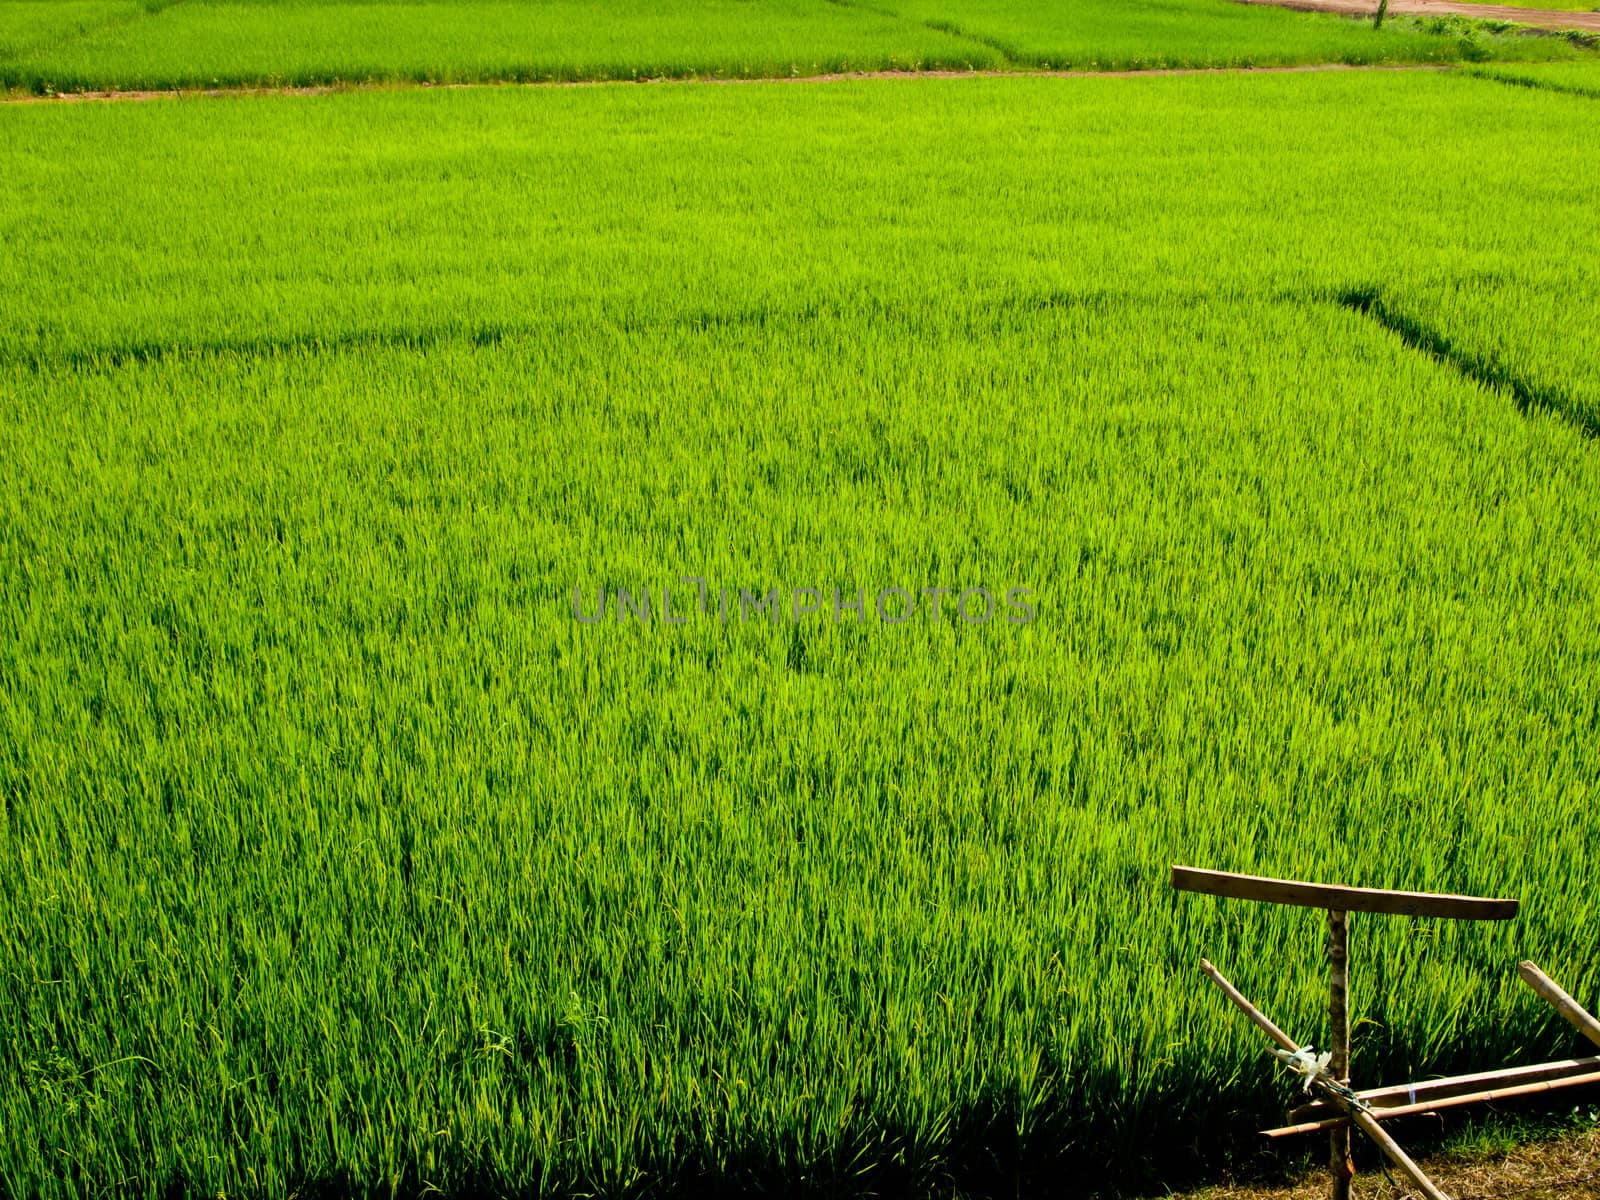 Green rice field1 by gjeerawut